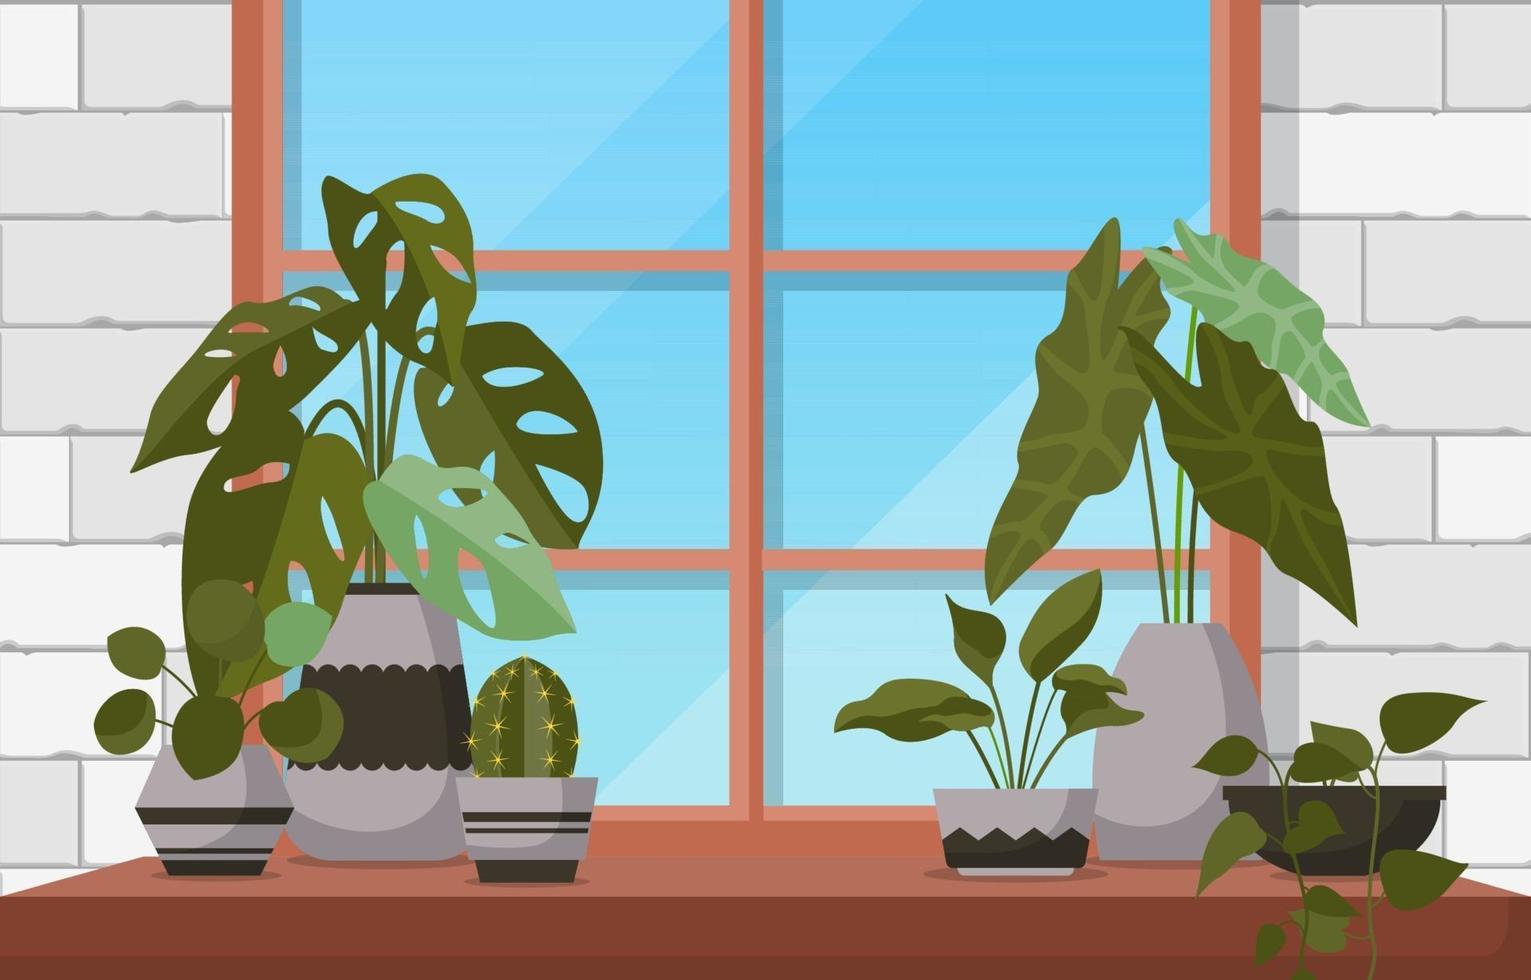 illustrazione della casa della finestra della pianta decorativa verde della pianta d'appartamento tropicale vettore